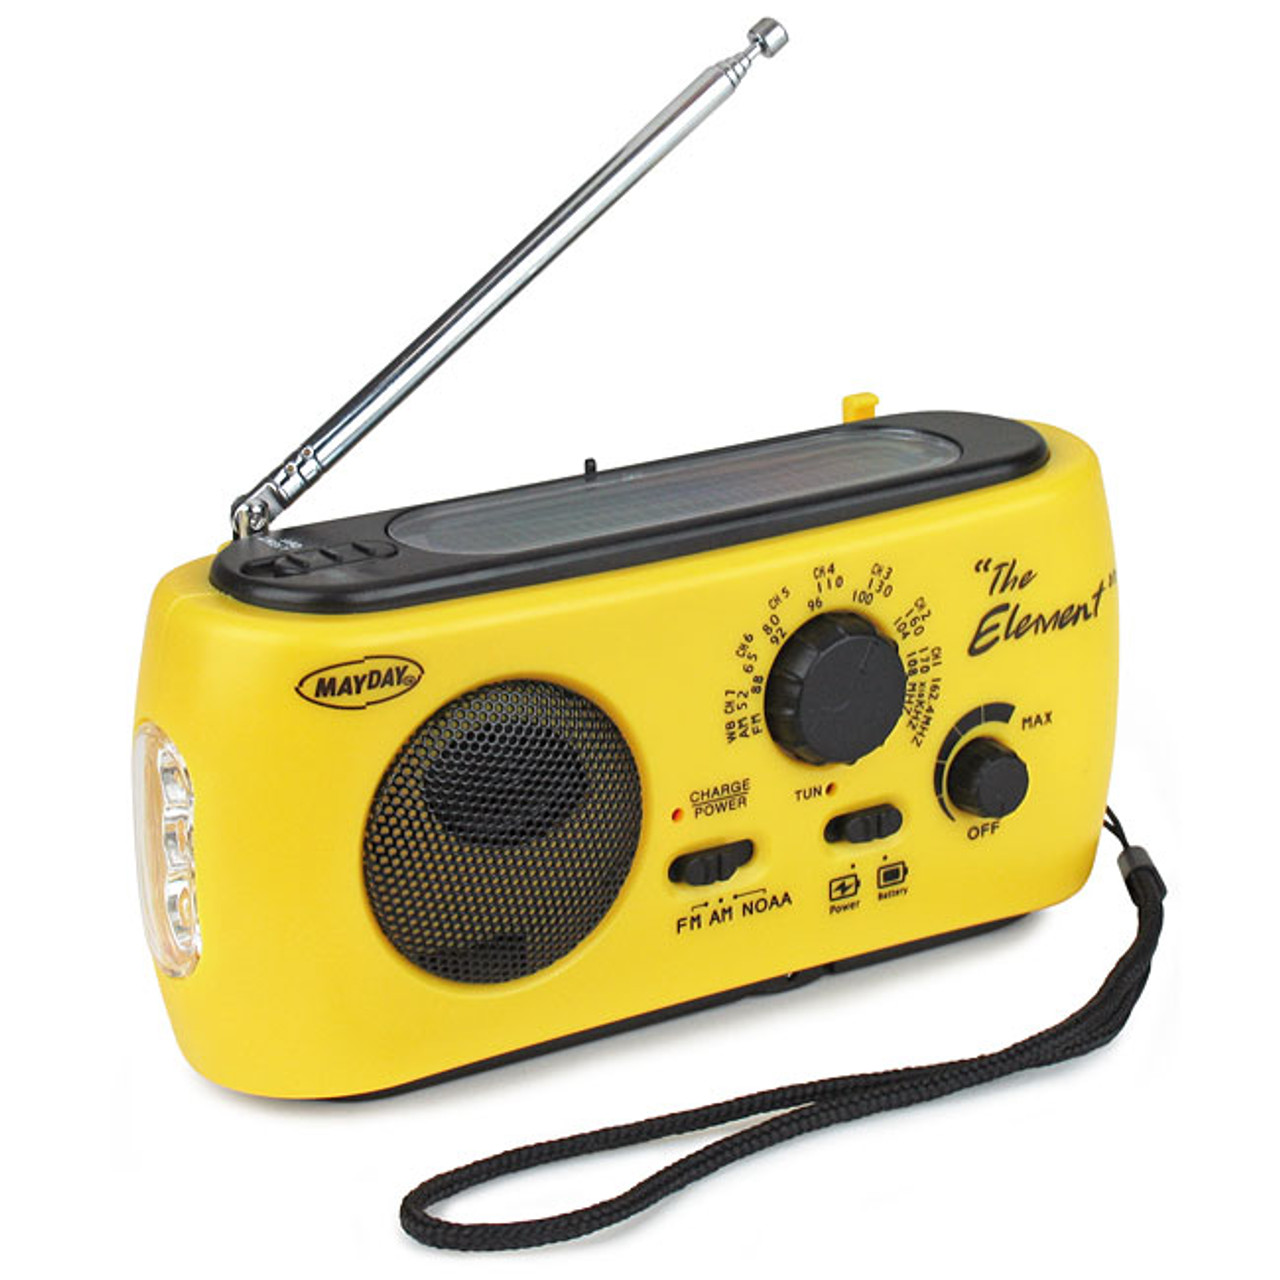 The Voyager V2 - Solar/Dynamo AM/FM/SW NOAA Weather Band Emergency Radio -  Emergency Radios Walkie Talkies